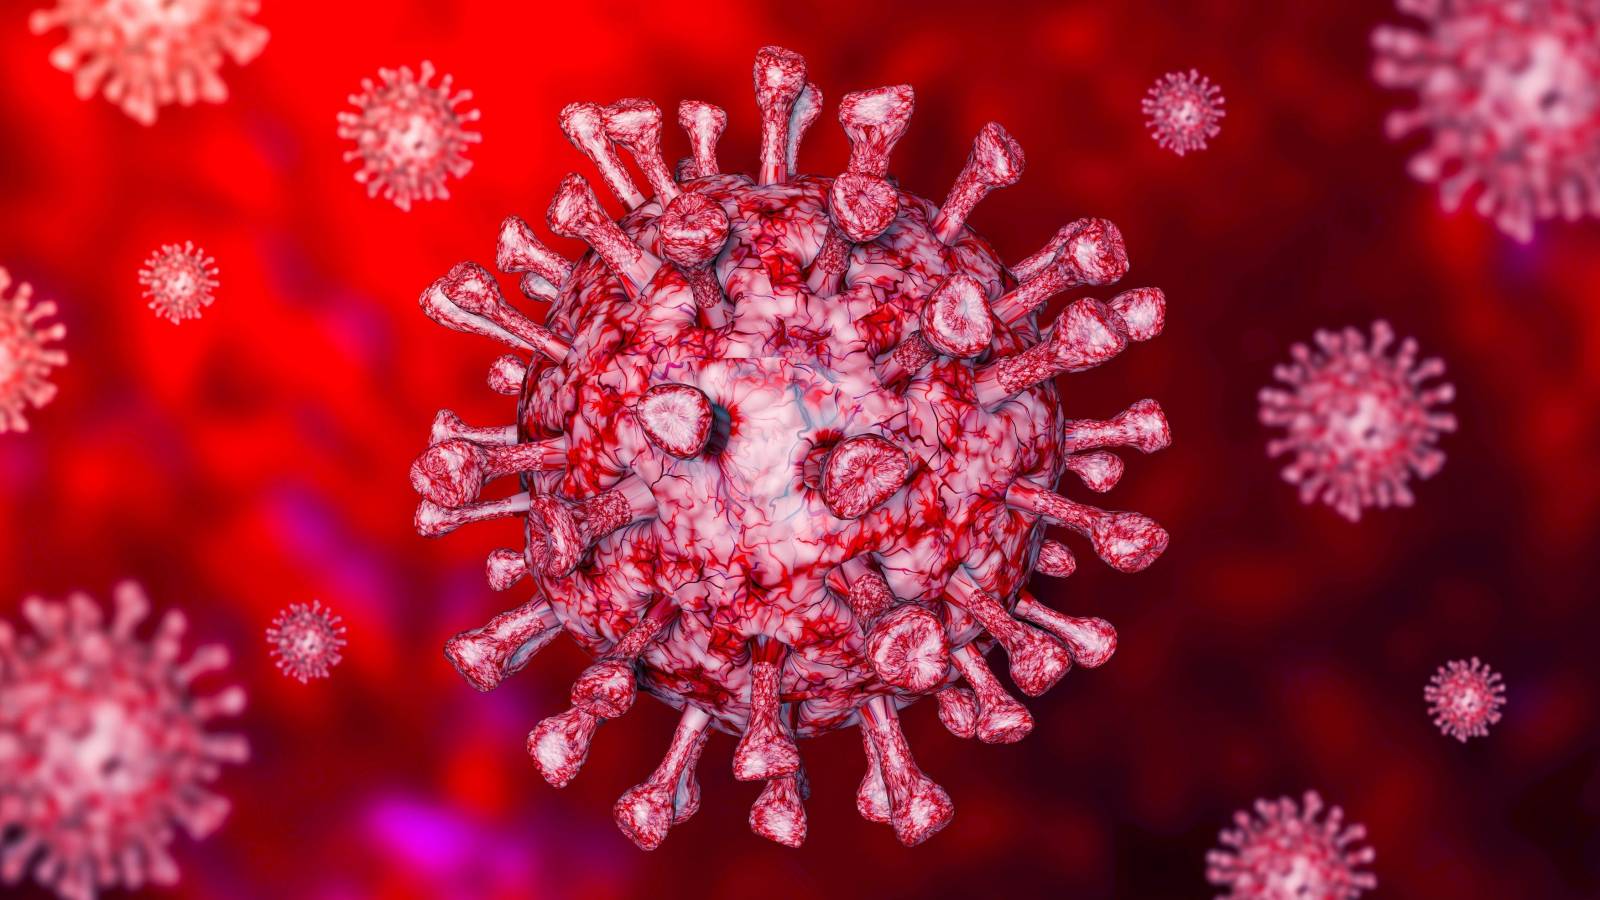 Immunitetsvaccination mot coronavirus